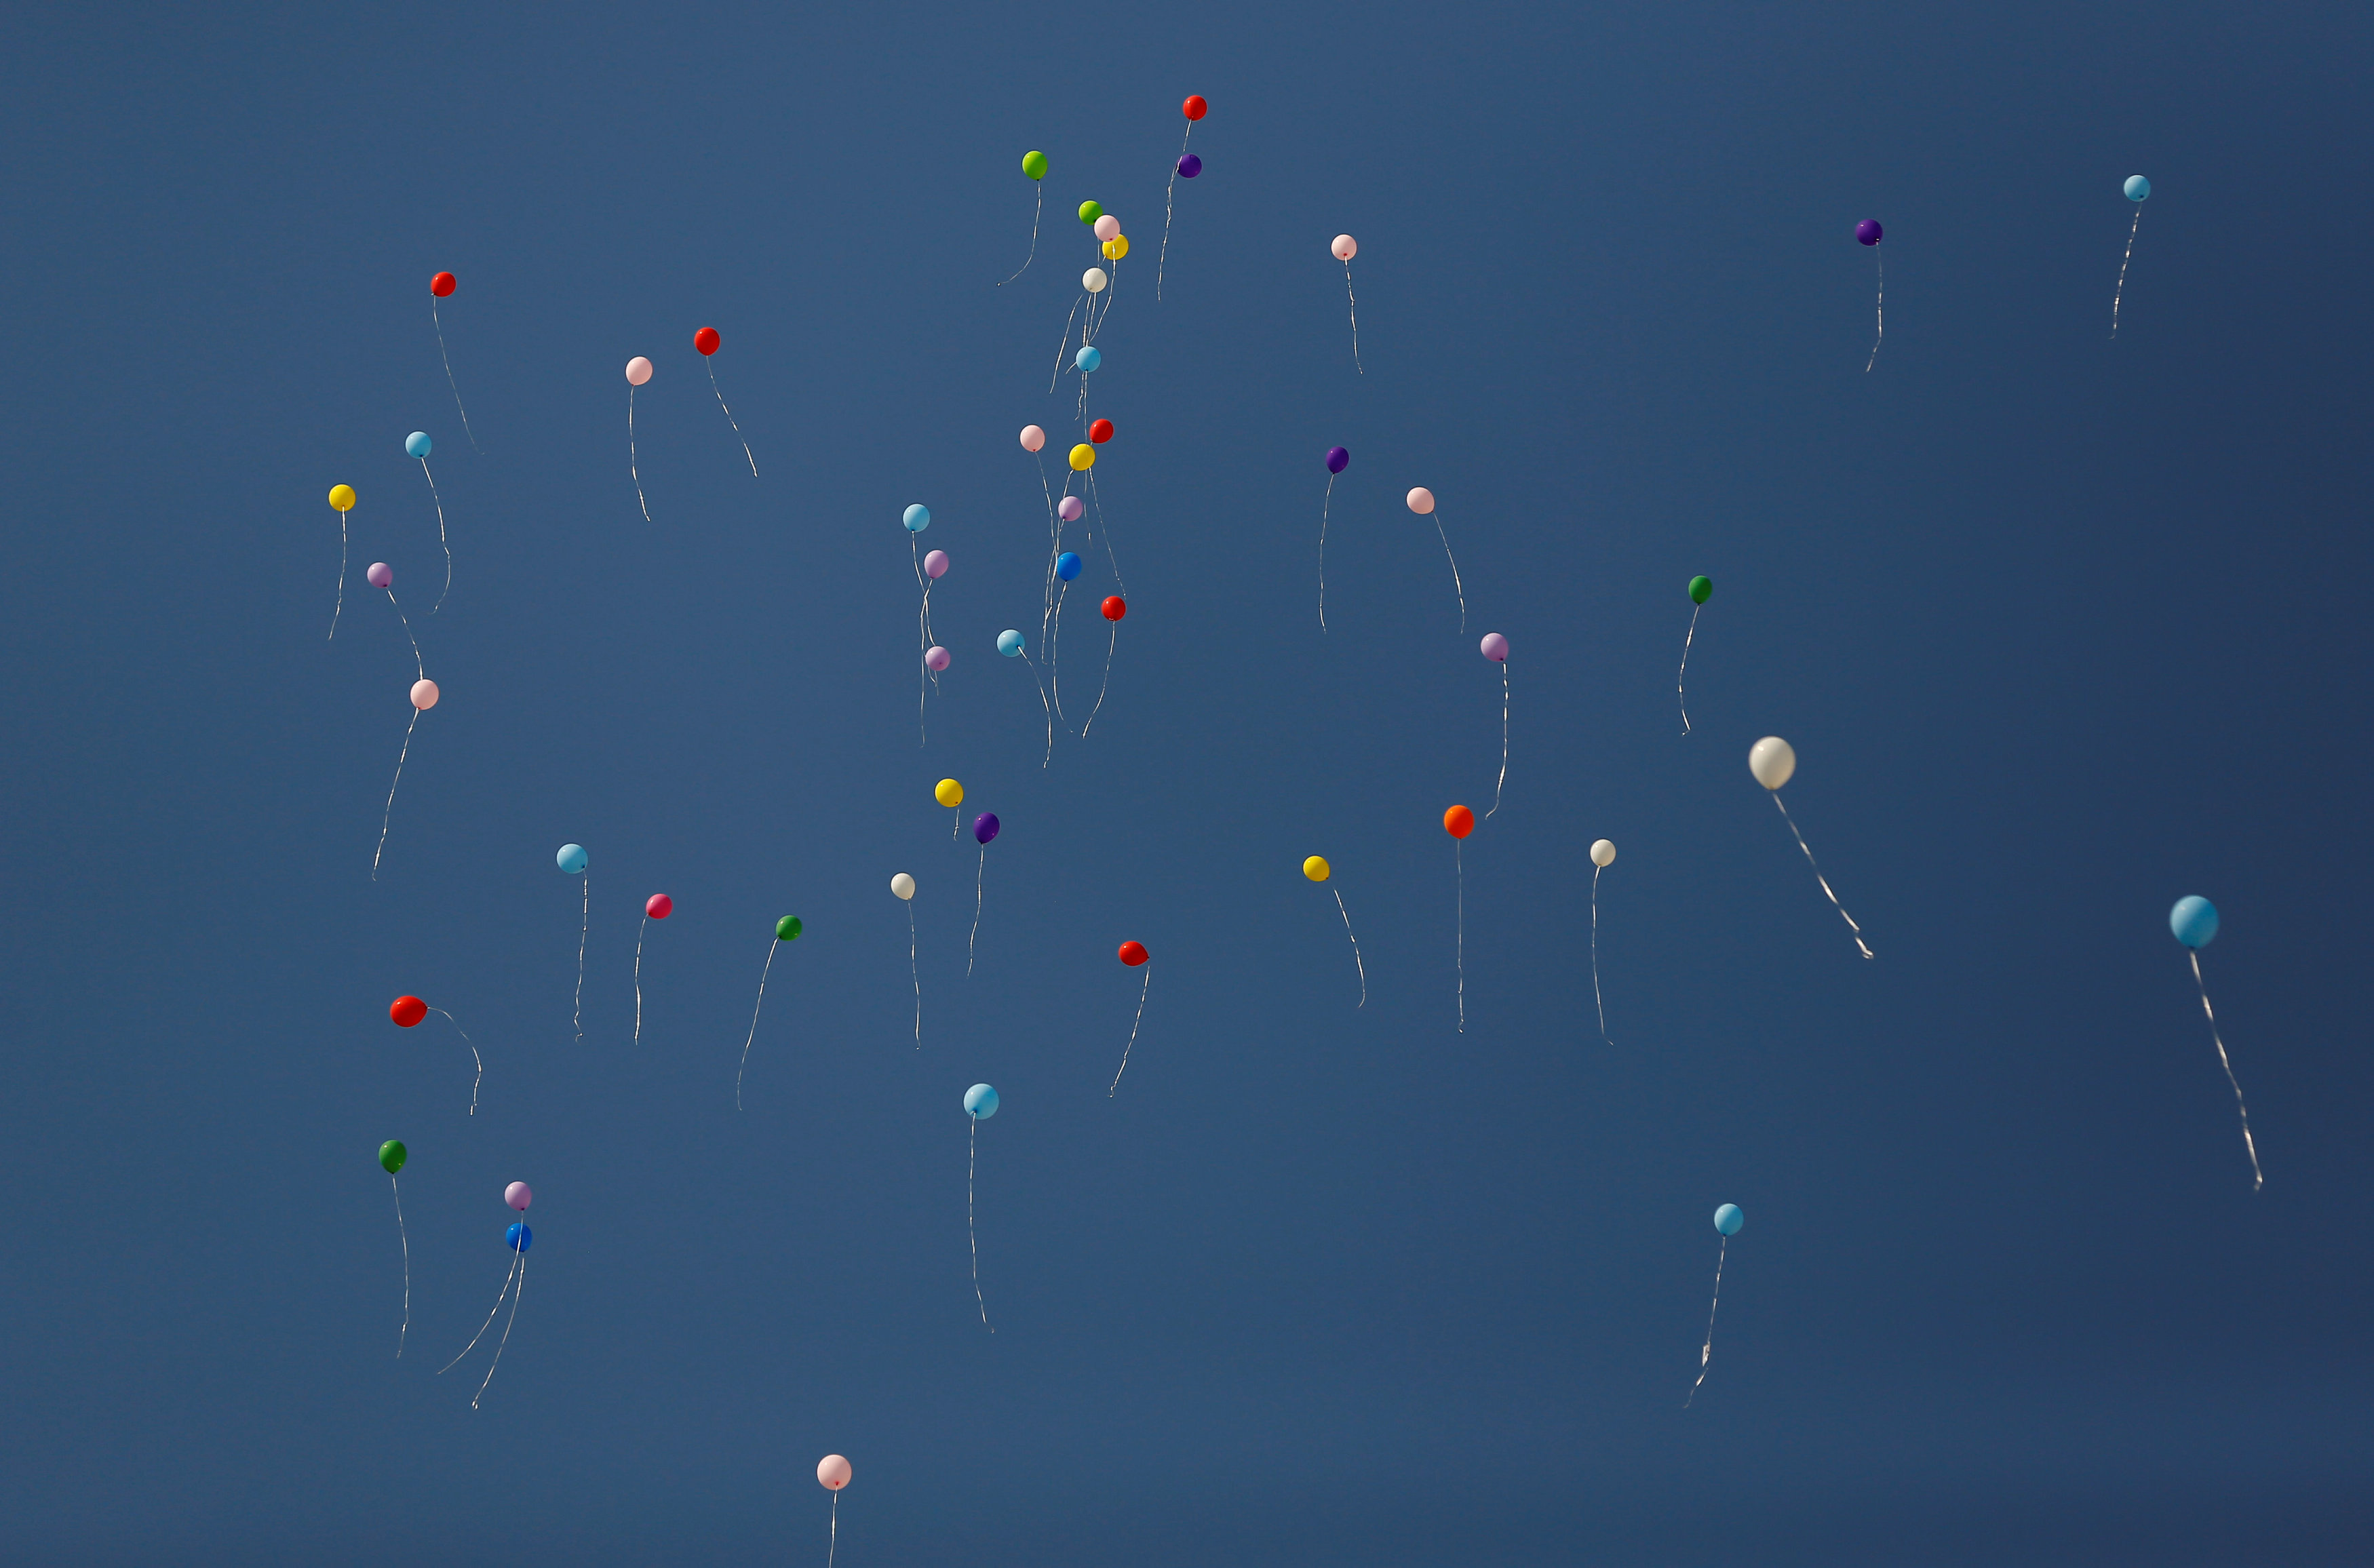 إطلاق البالونات فى الهواء